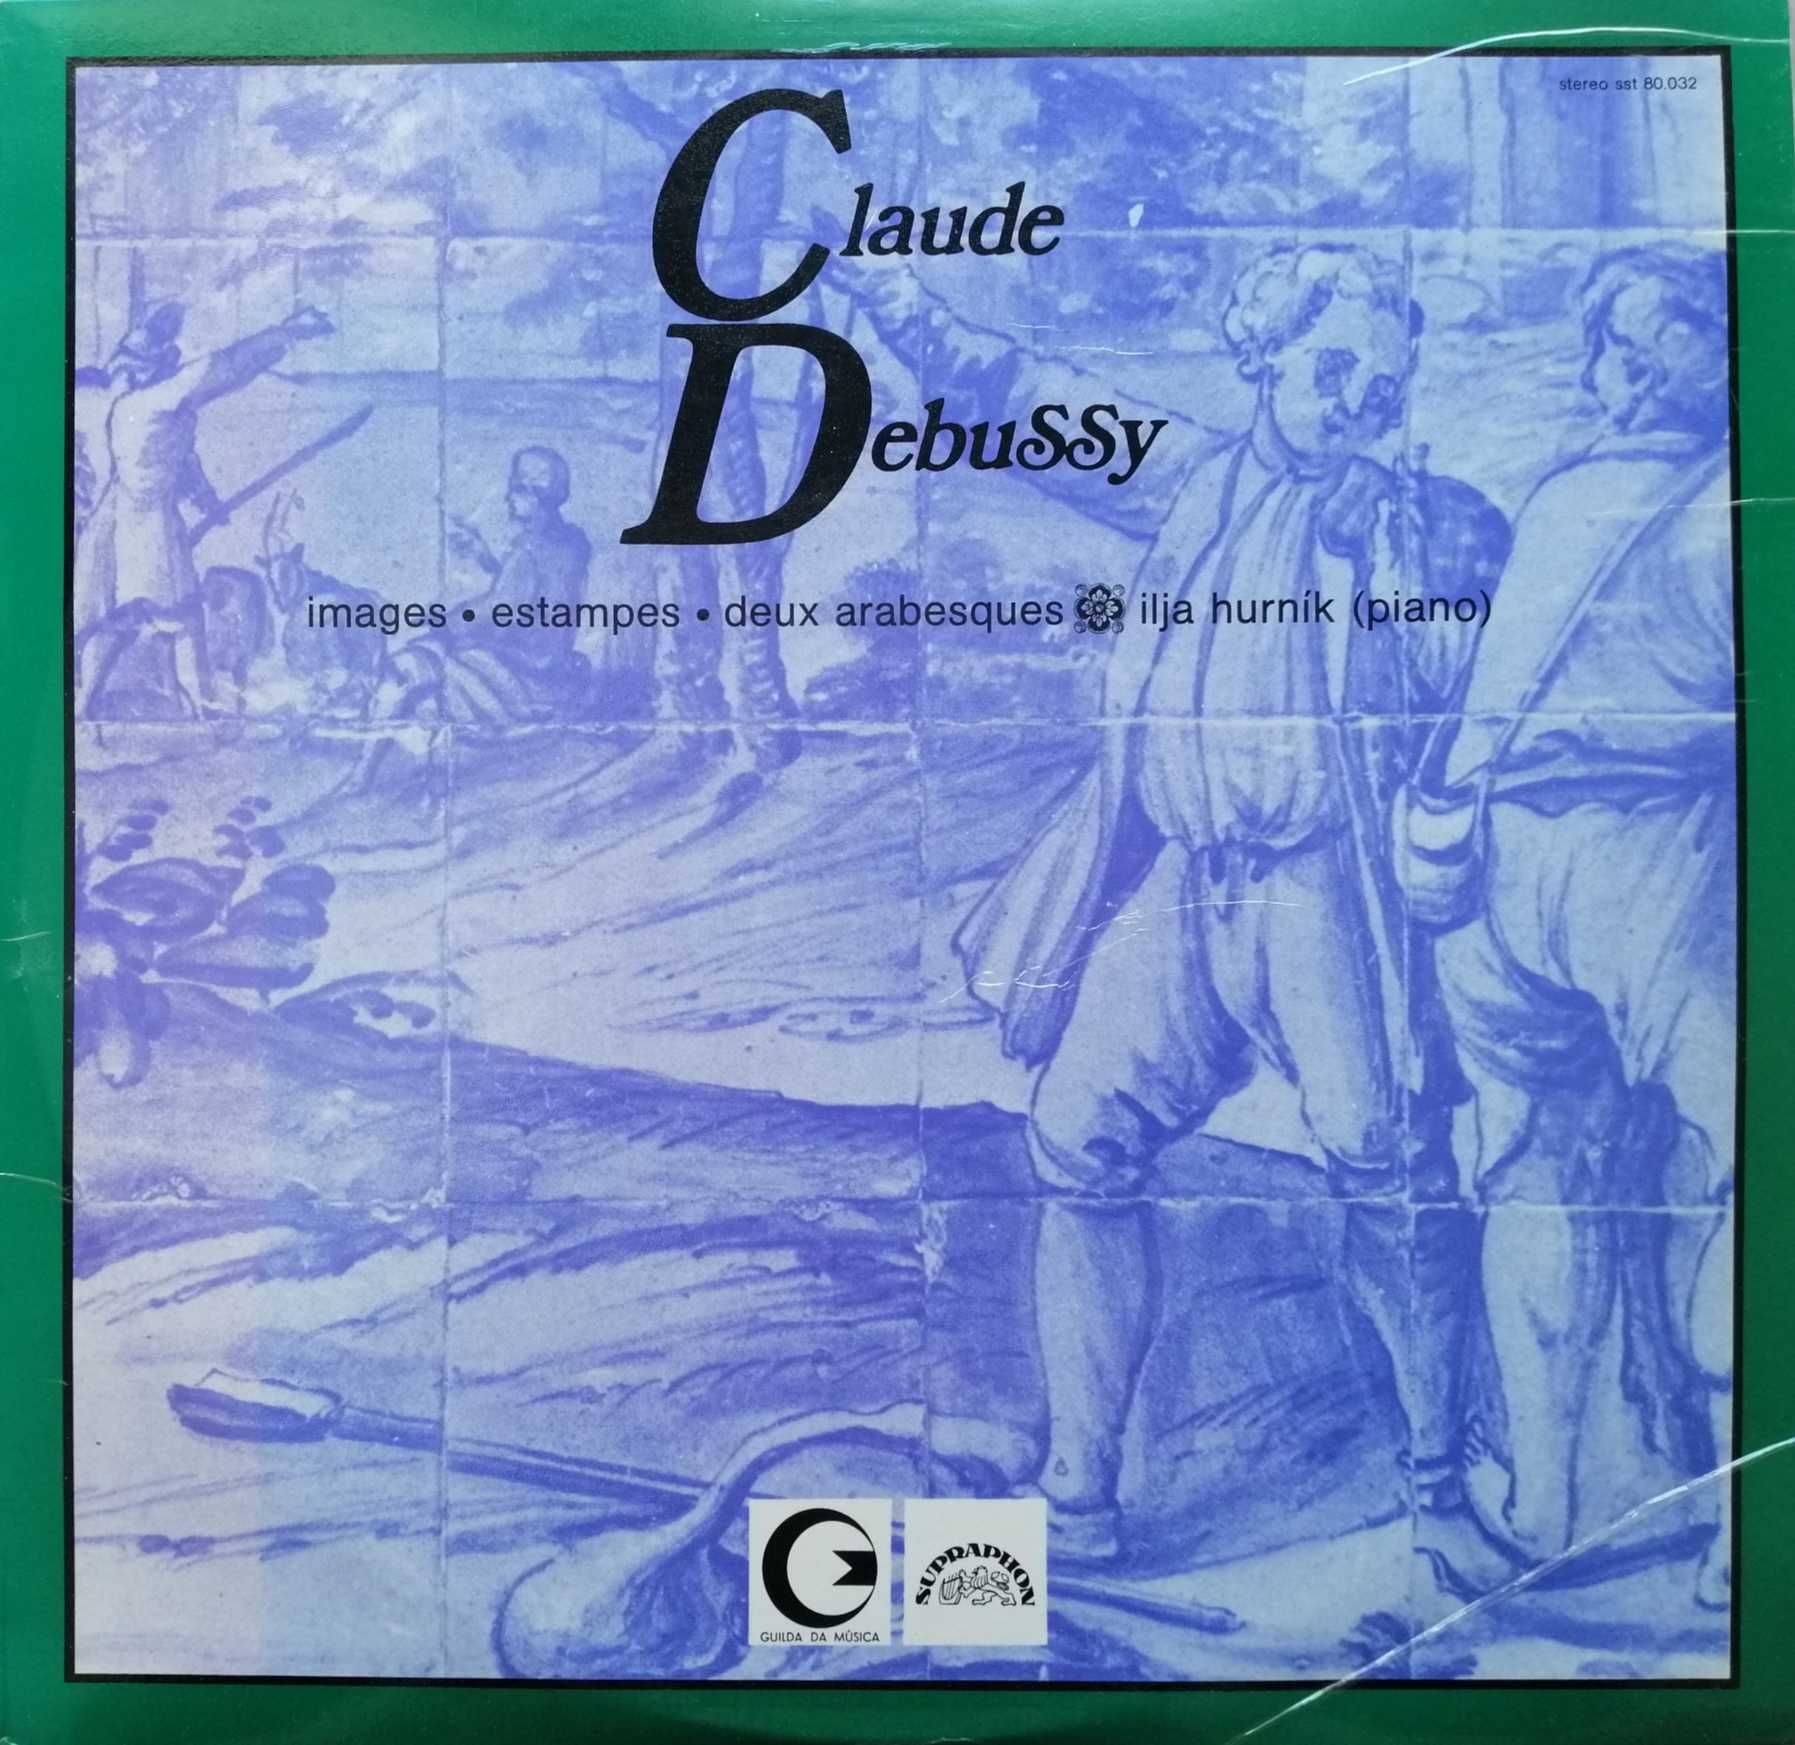 2 LPs - Claude Debussy e Gustav Mahler (Ed. Sassetti)